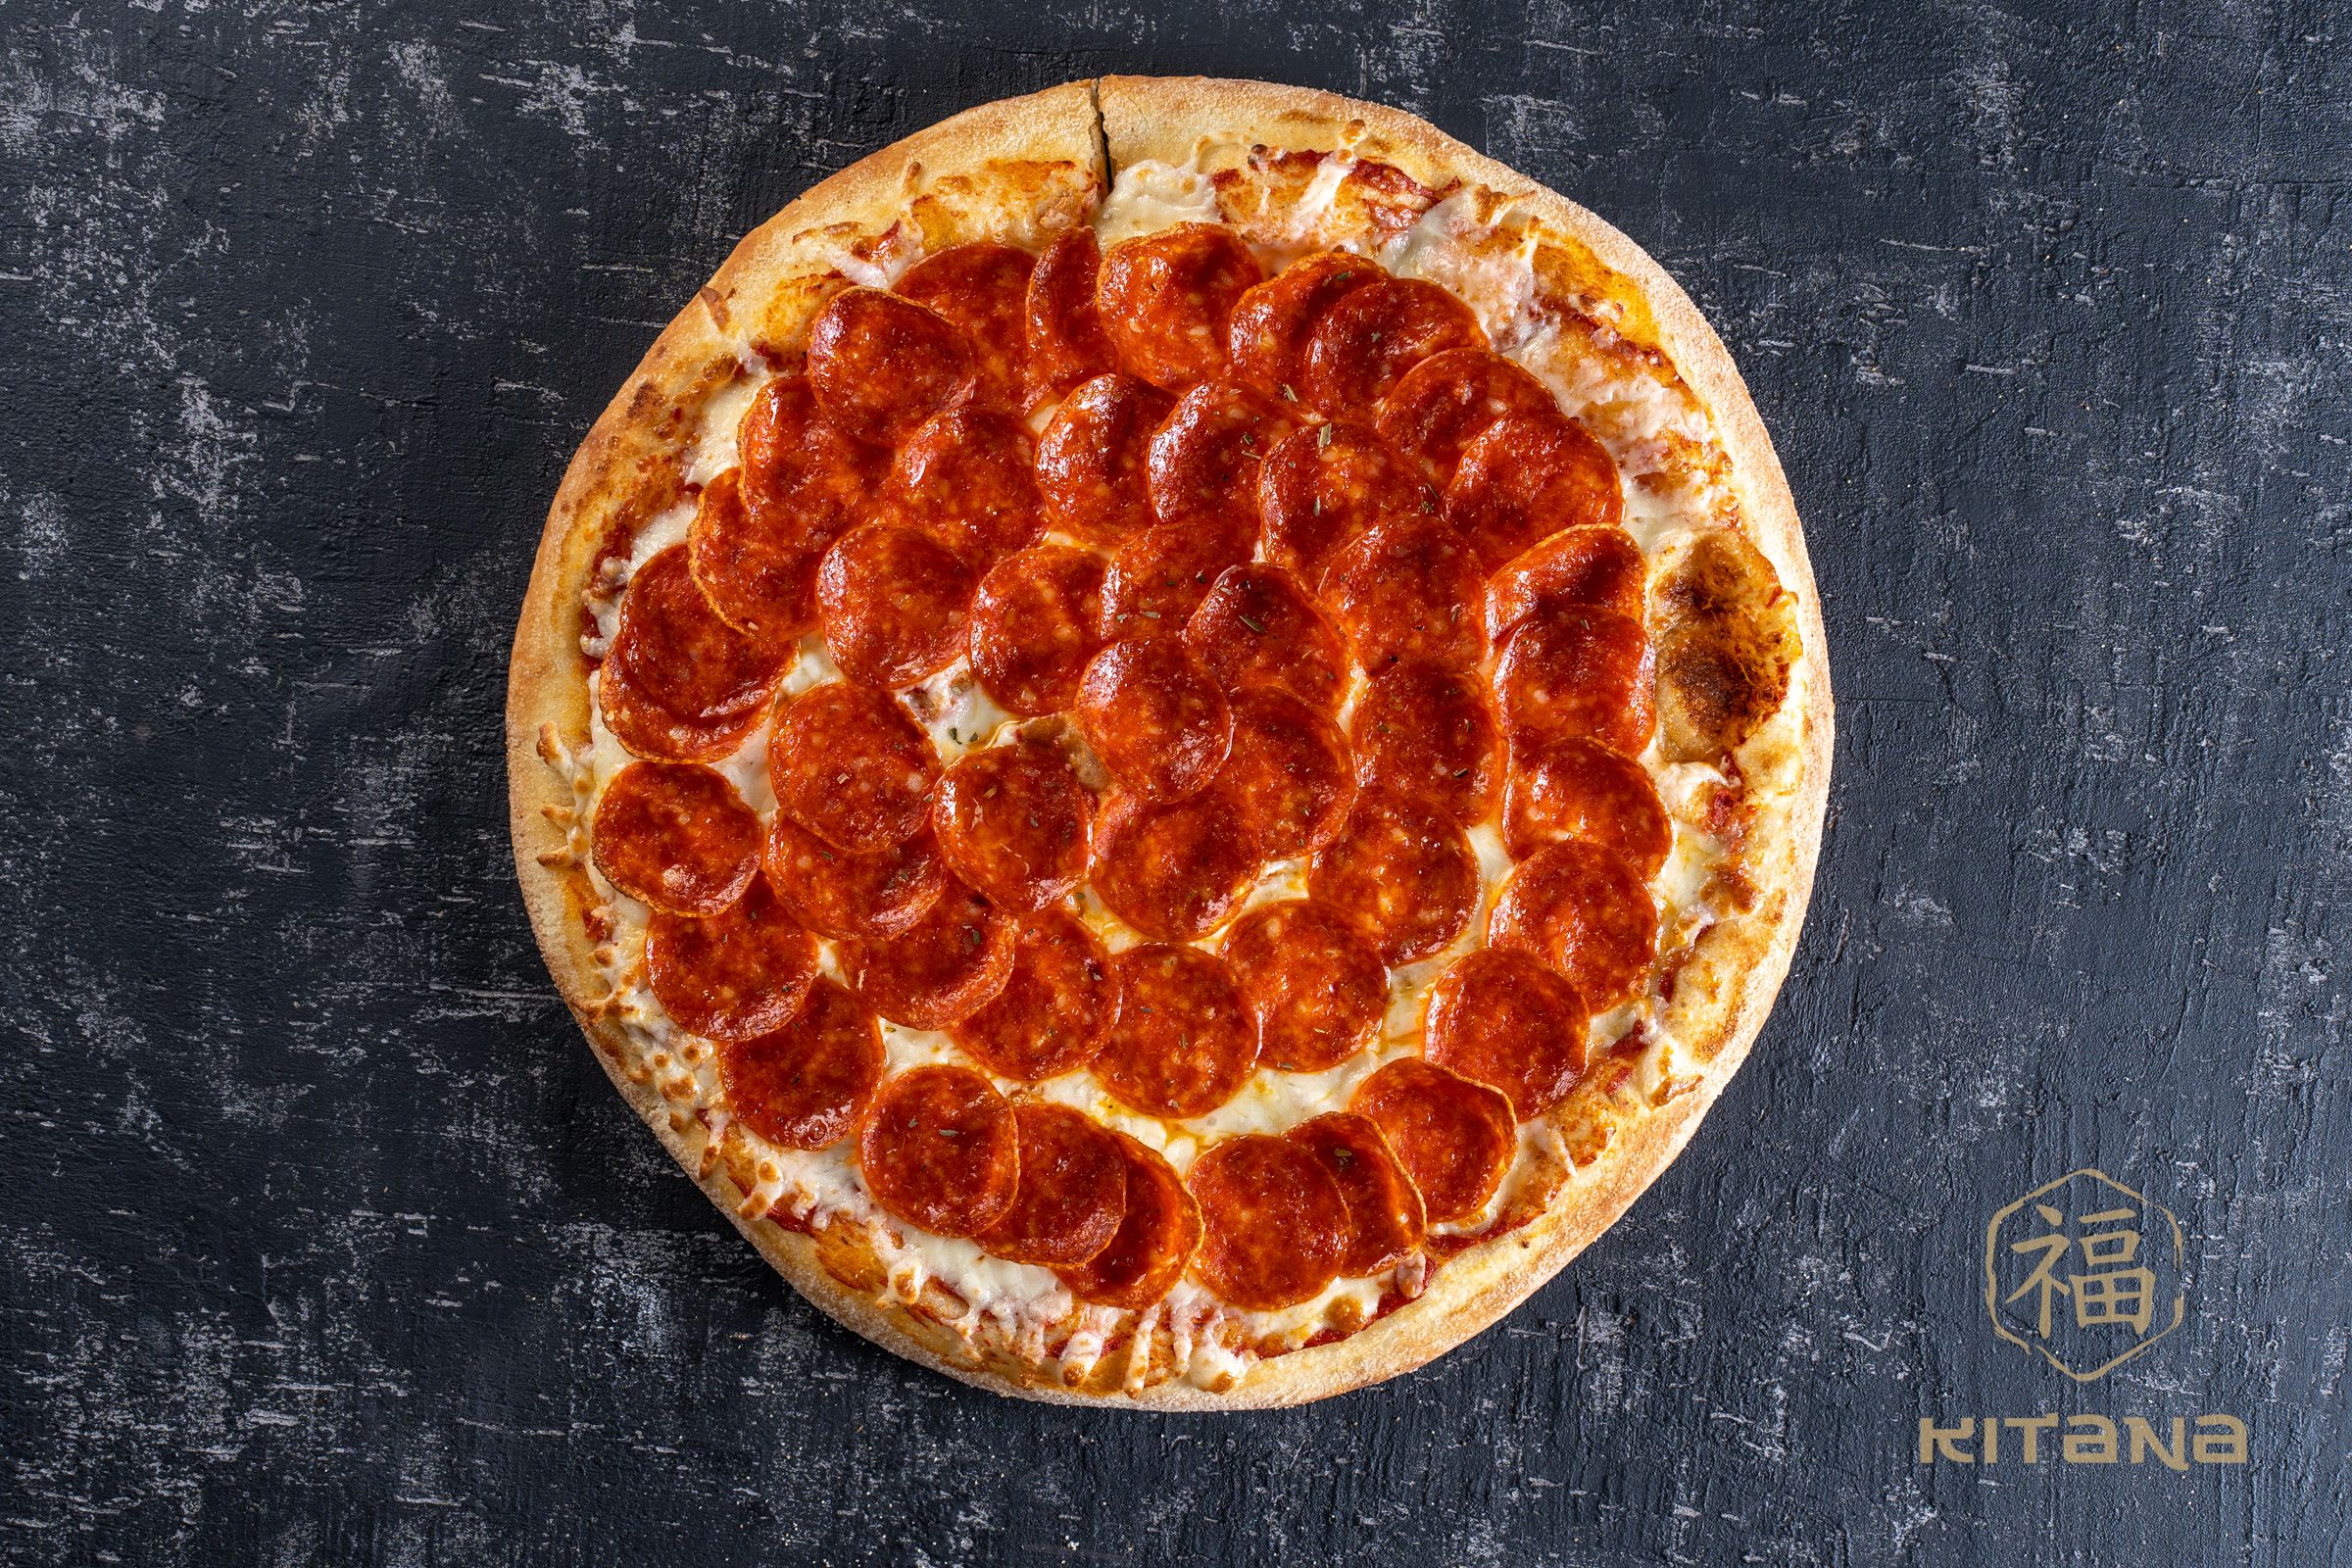 сколько калорий в куске пиццы пепперони из додо фото 94